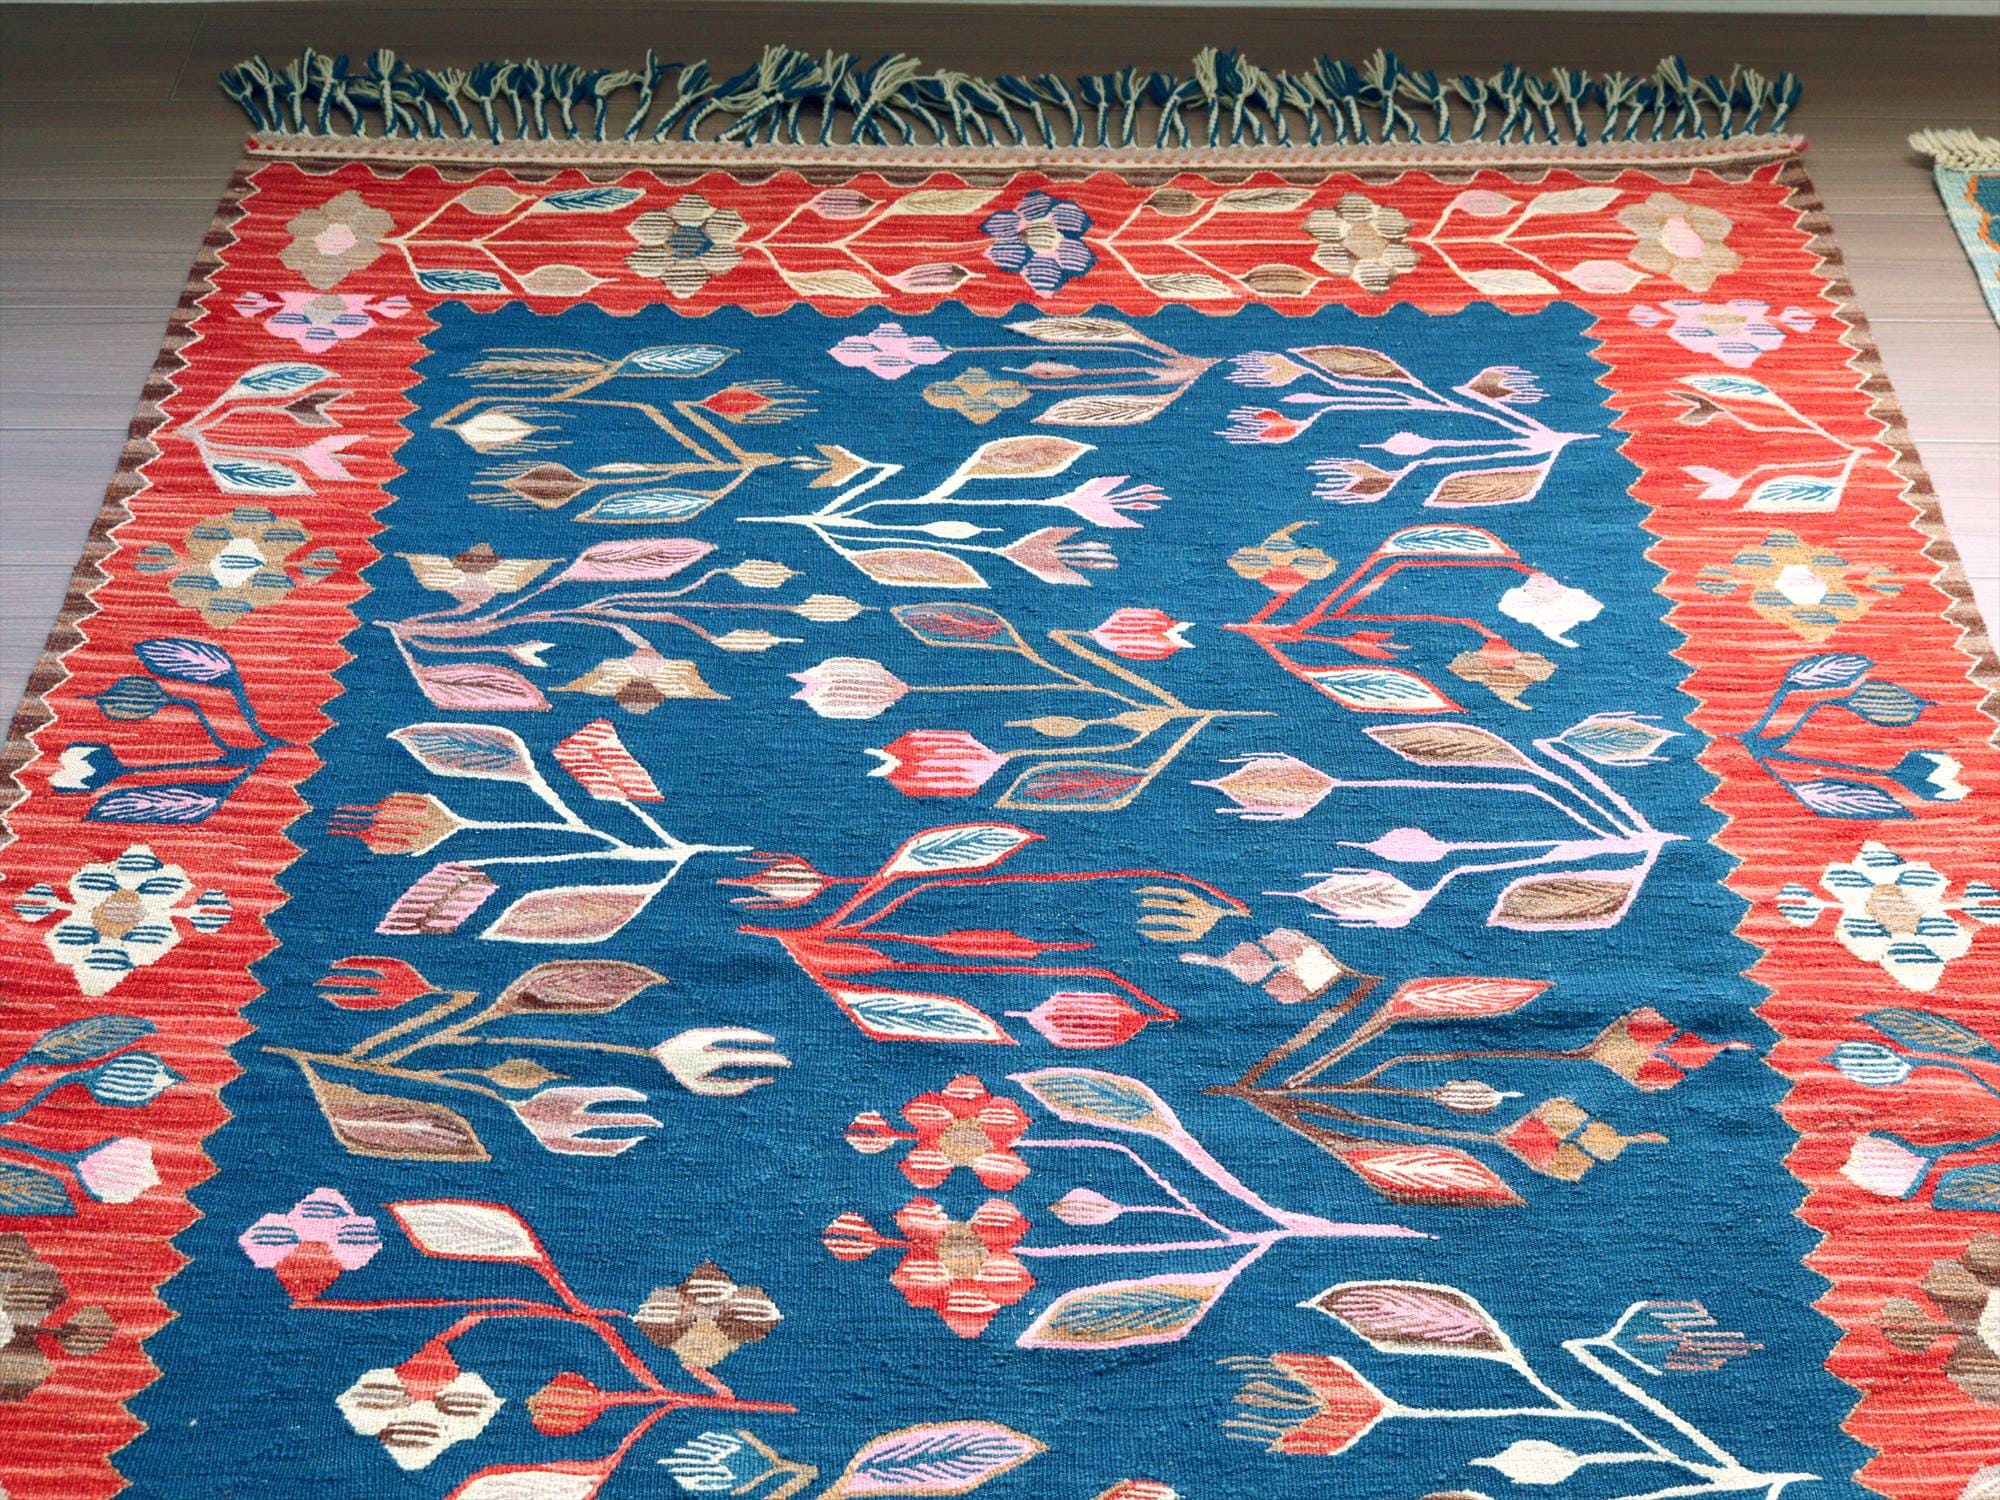 細かな織りの手織りキリム ウシャク186×127cm チューリップと小花のモチーフ